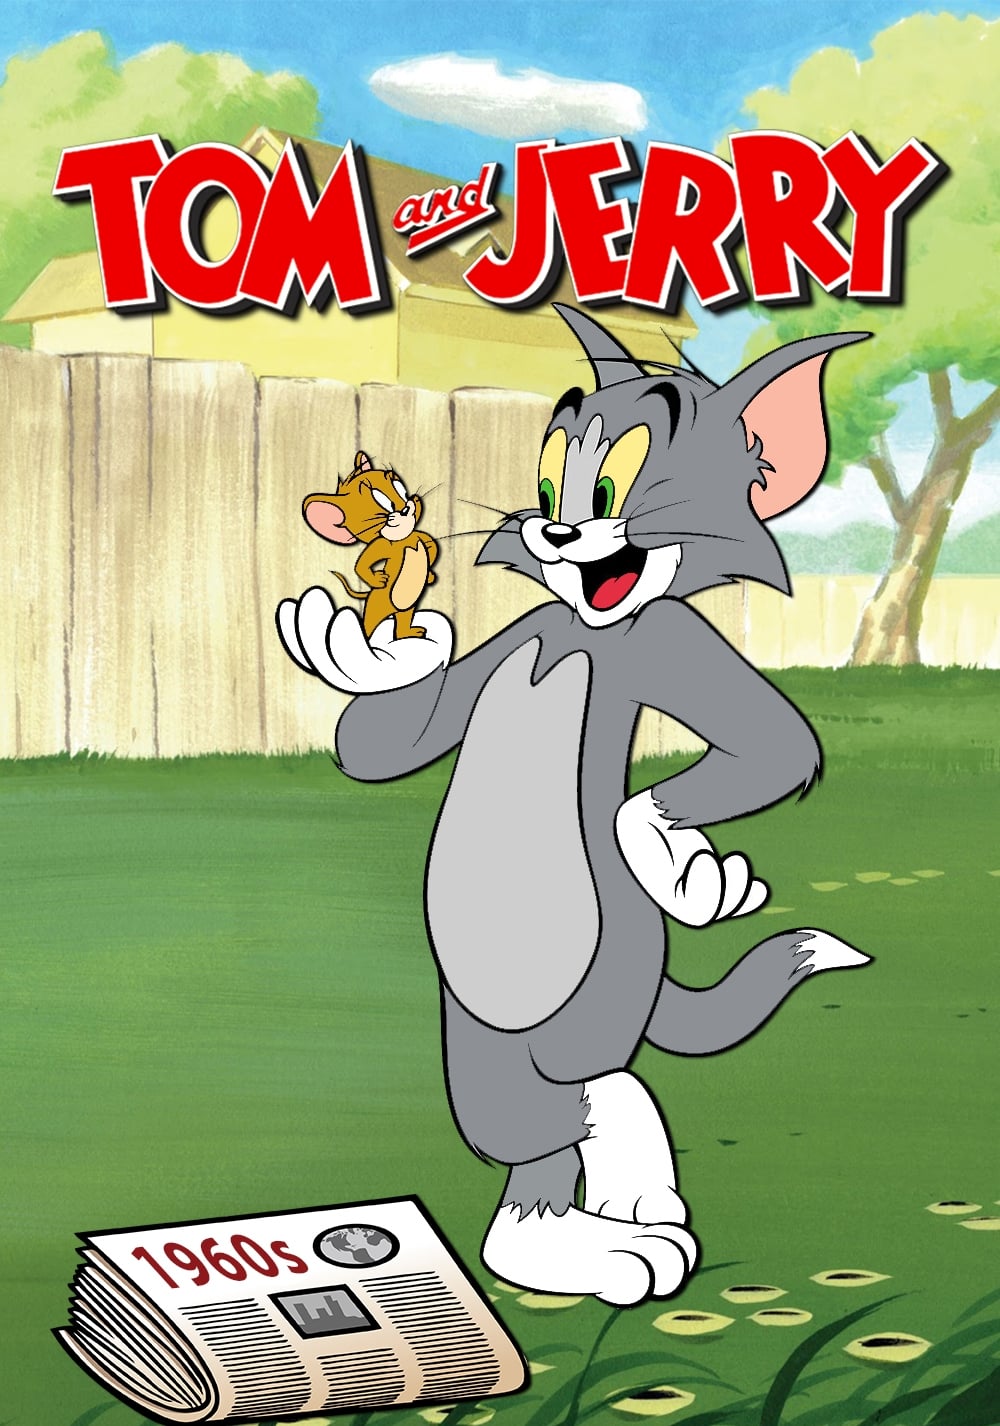 El Show de Tom y Jerry